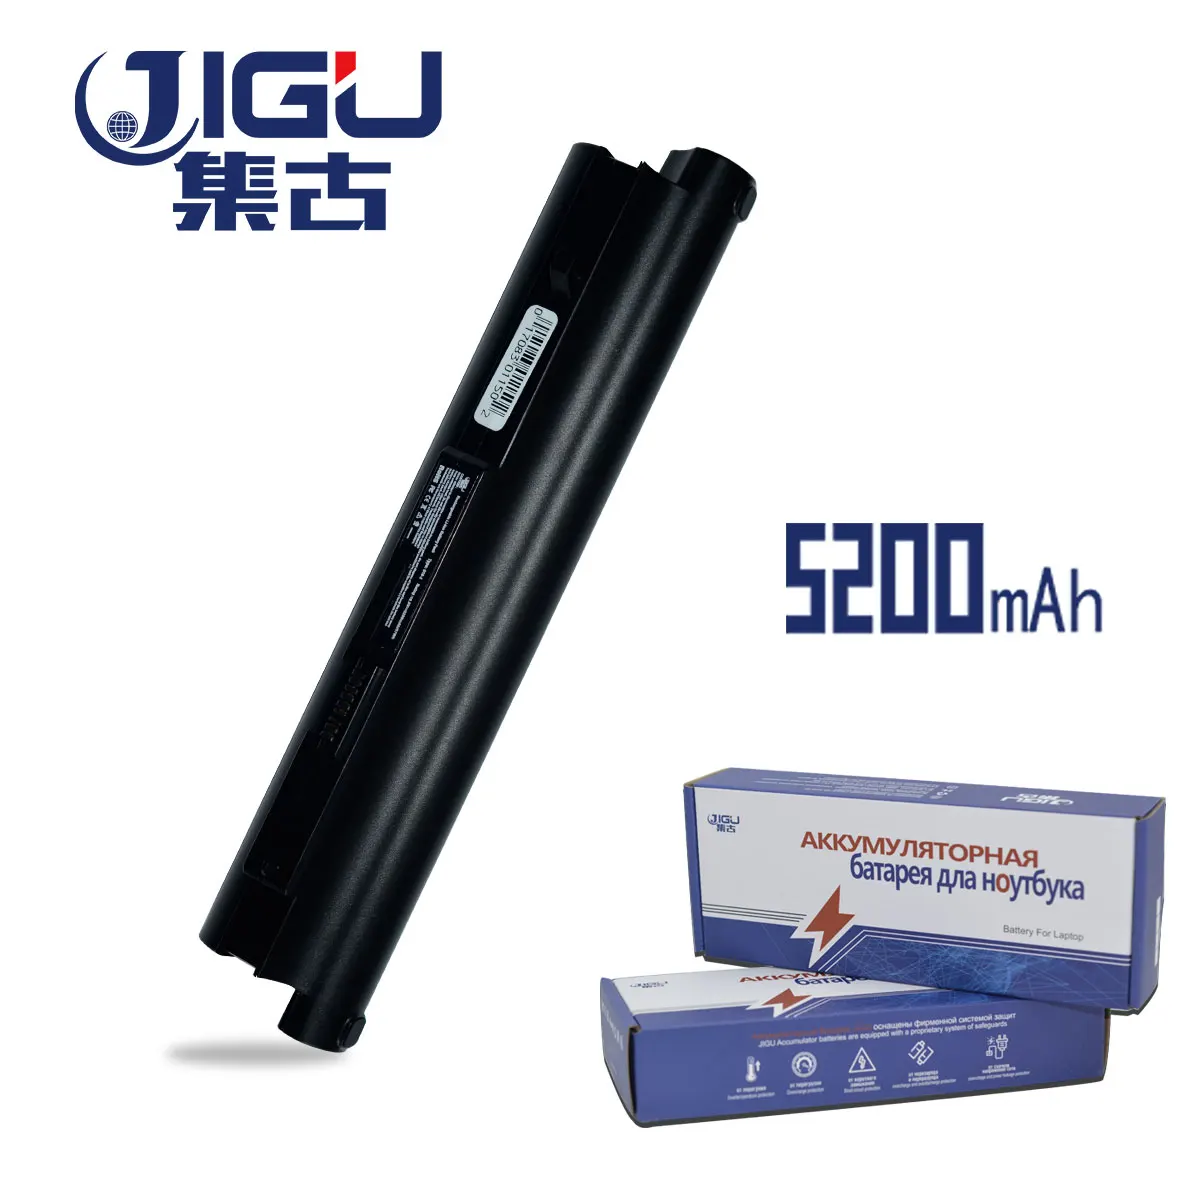 

JIGU Laptop Battery IdeaPad S10-2C S10-3C For Lenovo 57Y6273 2957 55Y9382 L09S6Y11 S10-2 20027 LO9C312 57Y6275 L09C3B11 L09S3B11